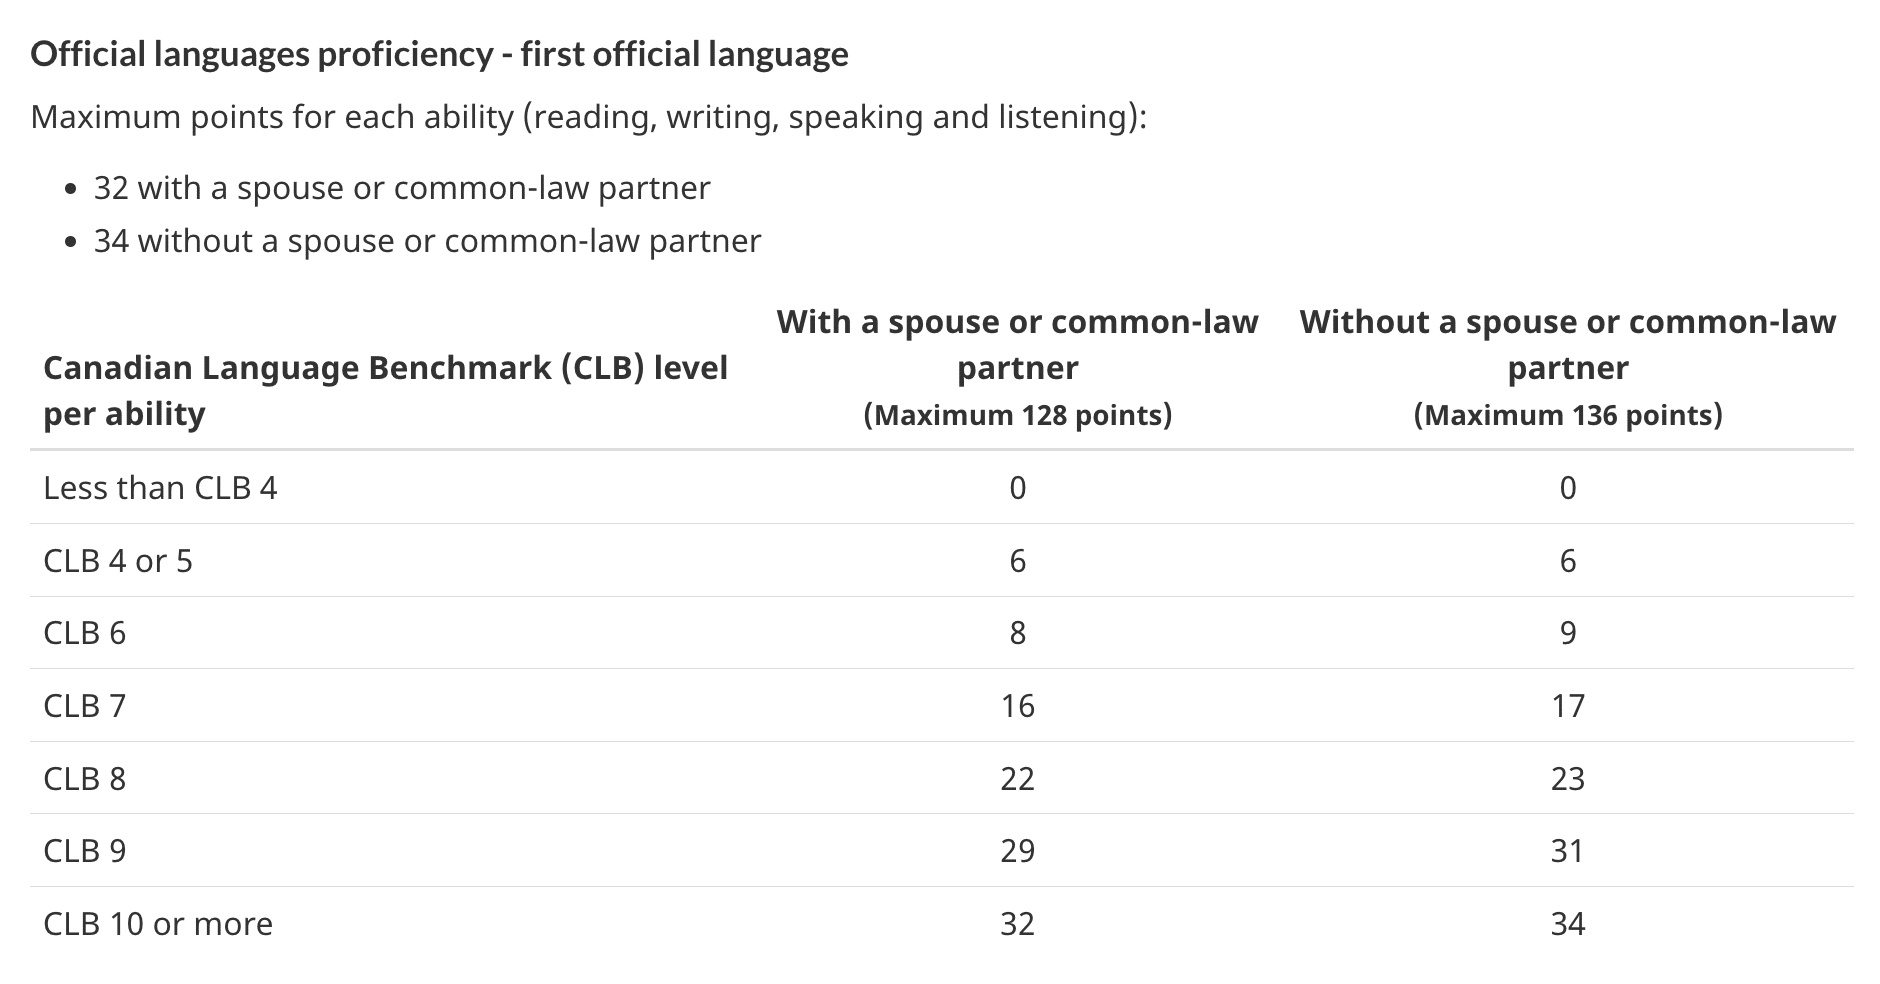 Tabla de puntuación de CRS para el dominio del primer idioma, tanto para aquellos con una pareja que los acompaña como para aquellos sin ella.